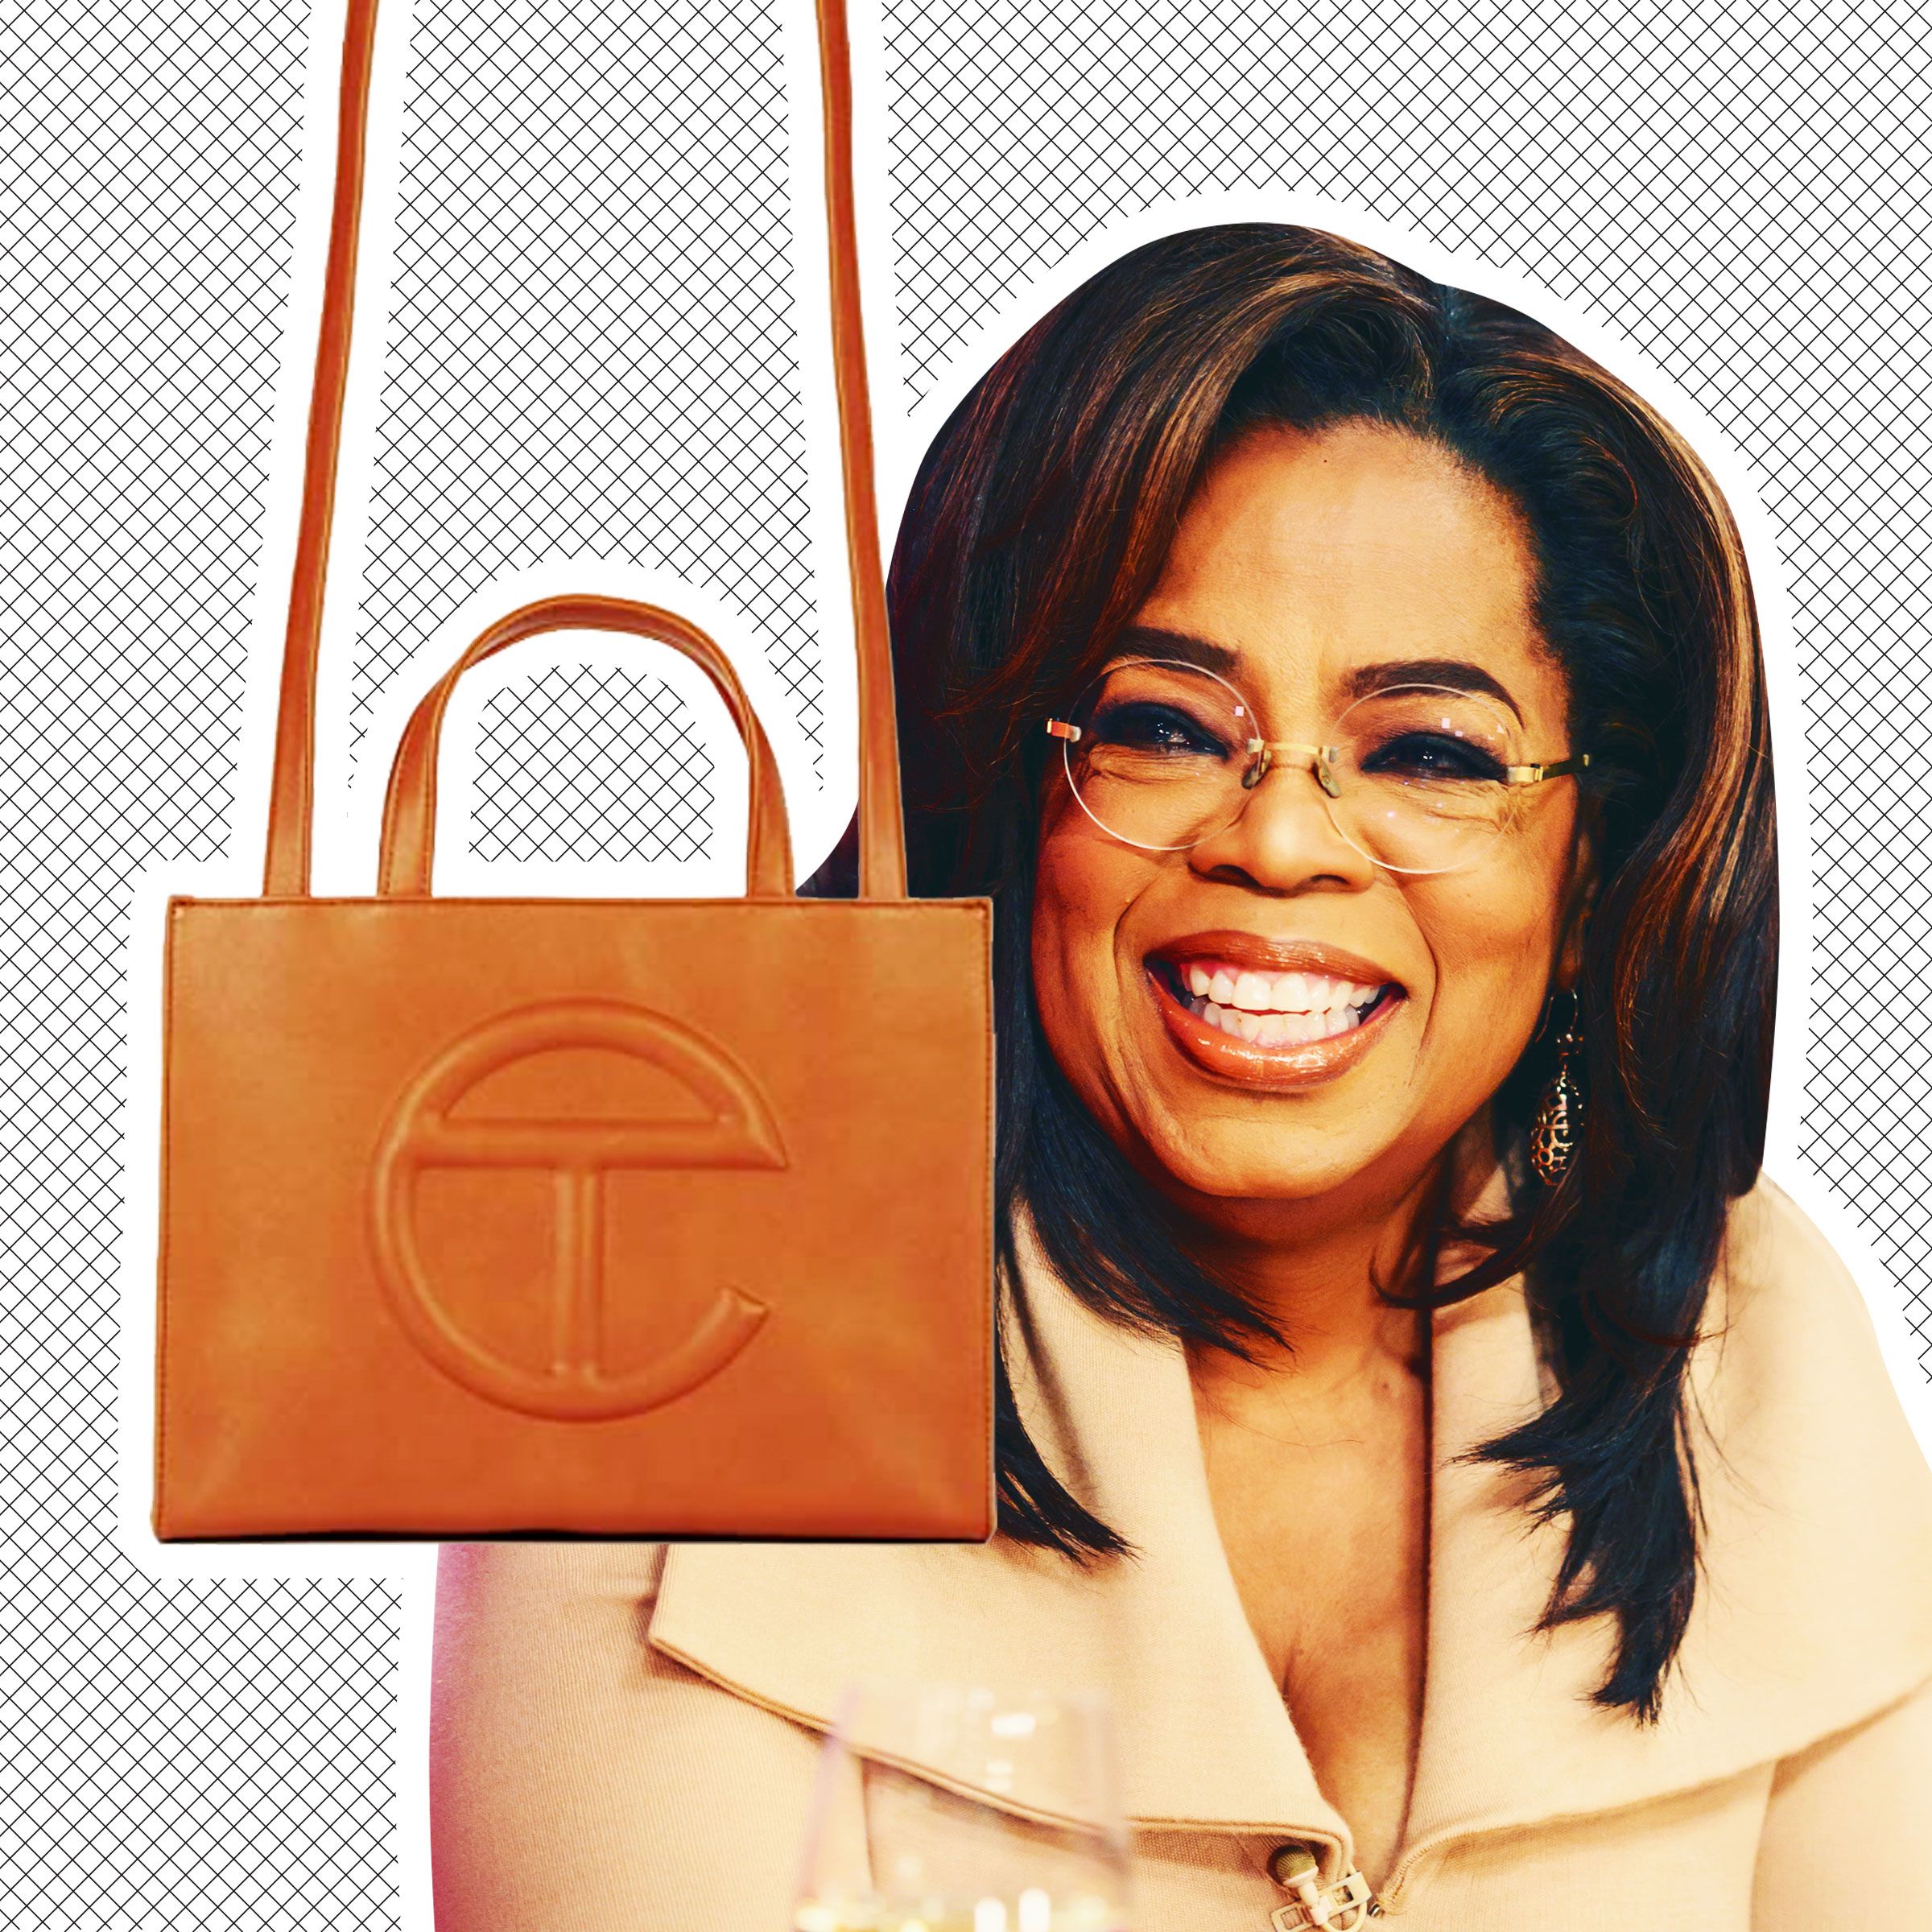 Telfar Shopping Bag Included on Oprah's Favorite Things 2020 List